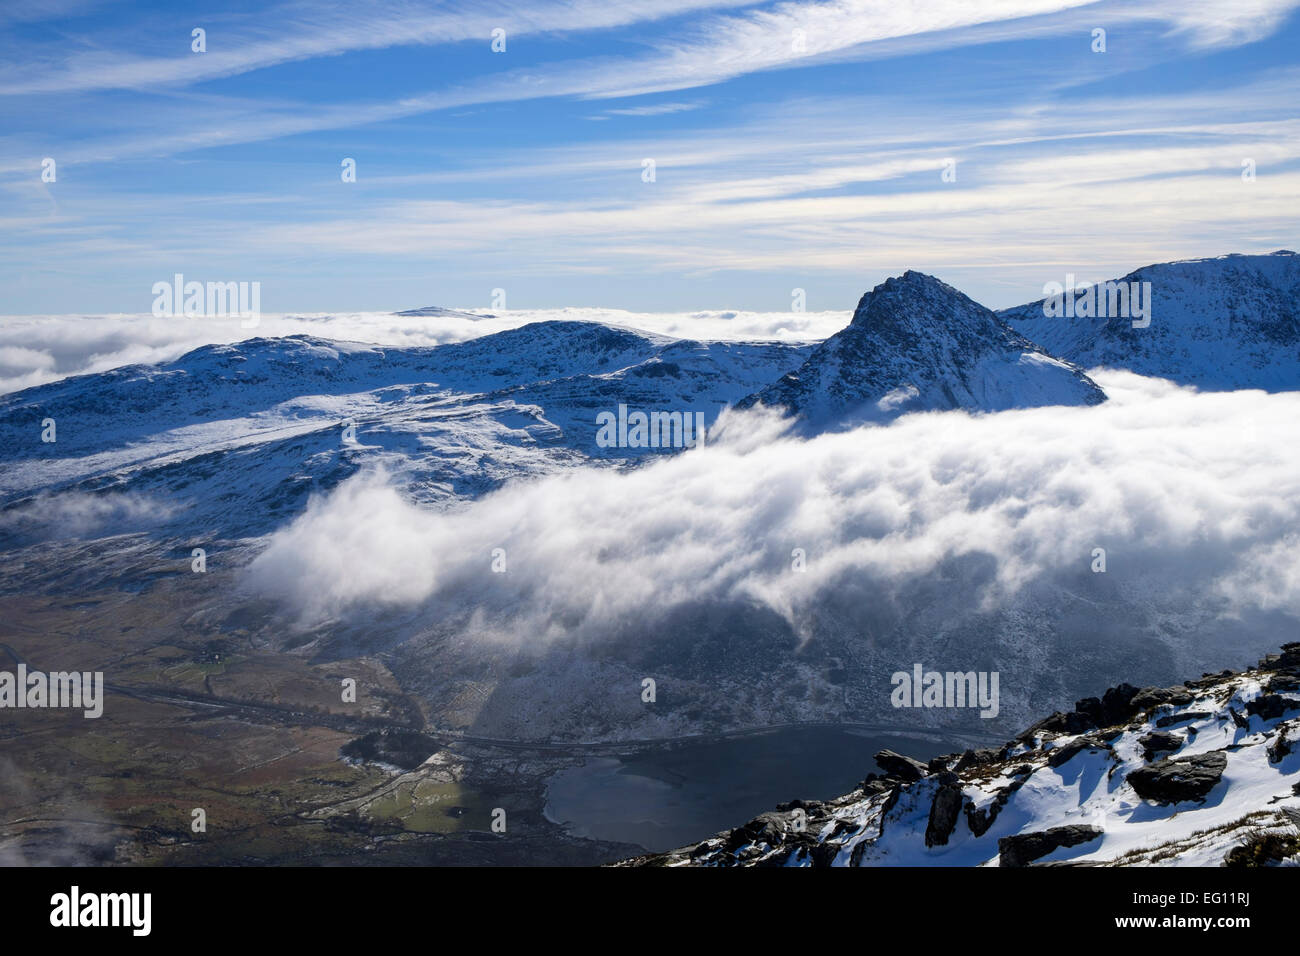 Basse nubi e nebbia moto vorticoso intorno al monte Tryfan sopra Ogwen valle durante un'inversione della temperatura in wild Snowdonia (Eryri) montagne. Wales UK Foto Stock